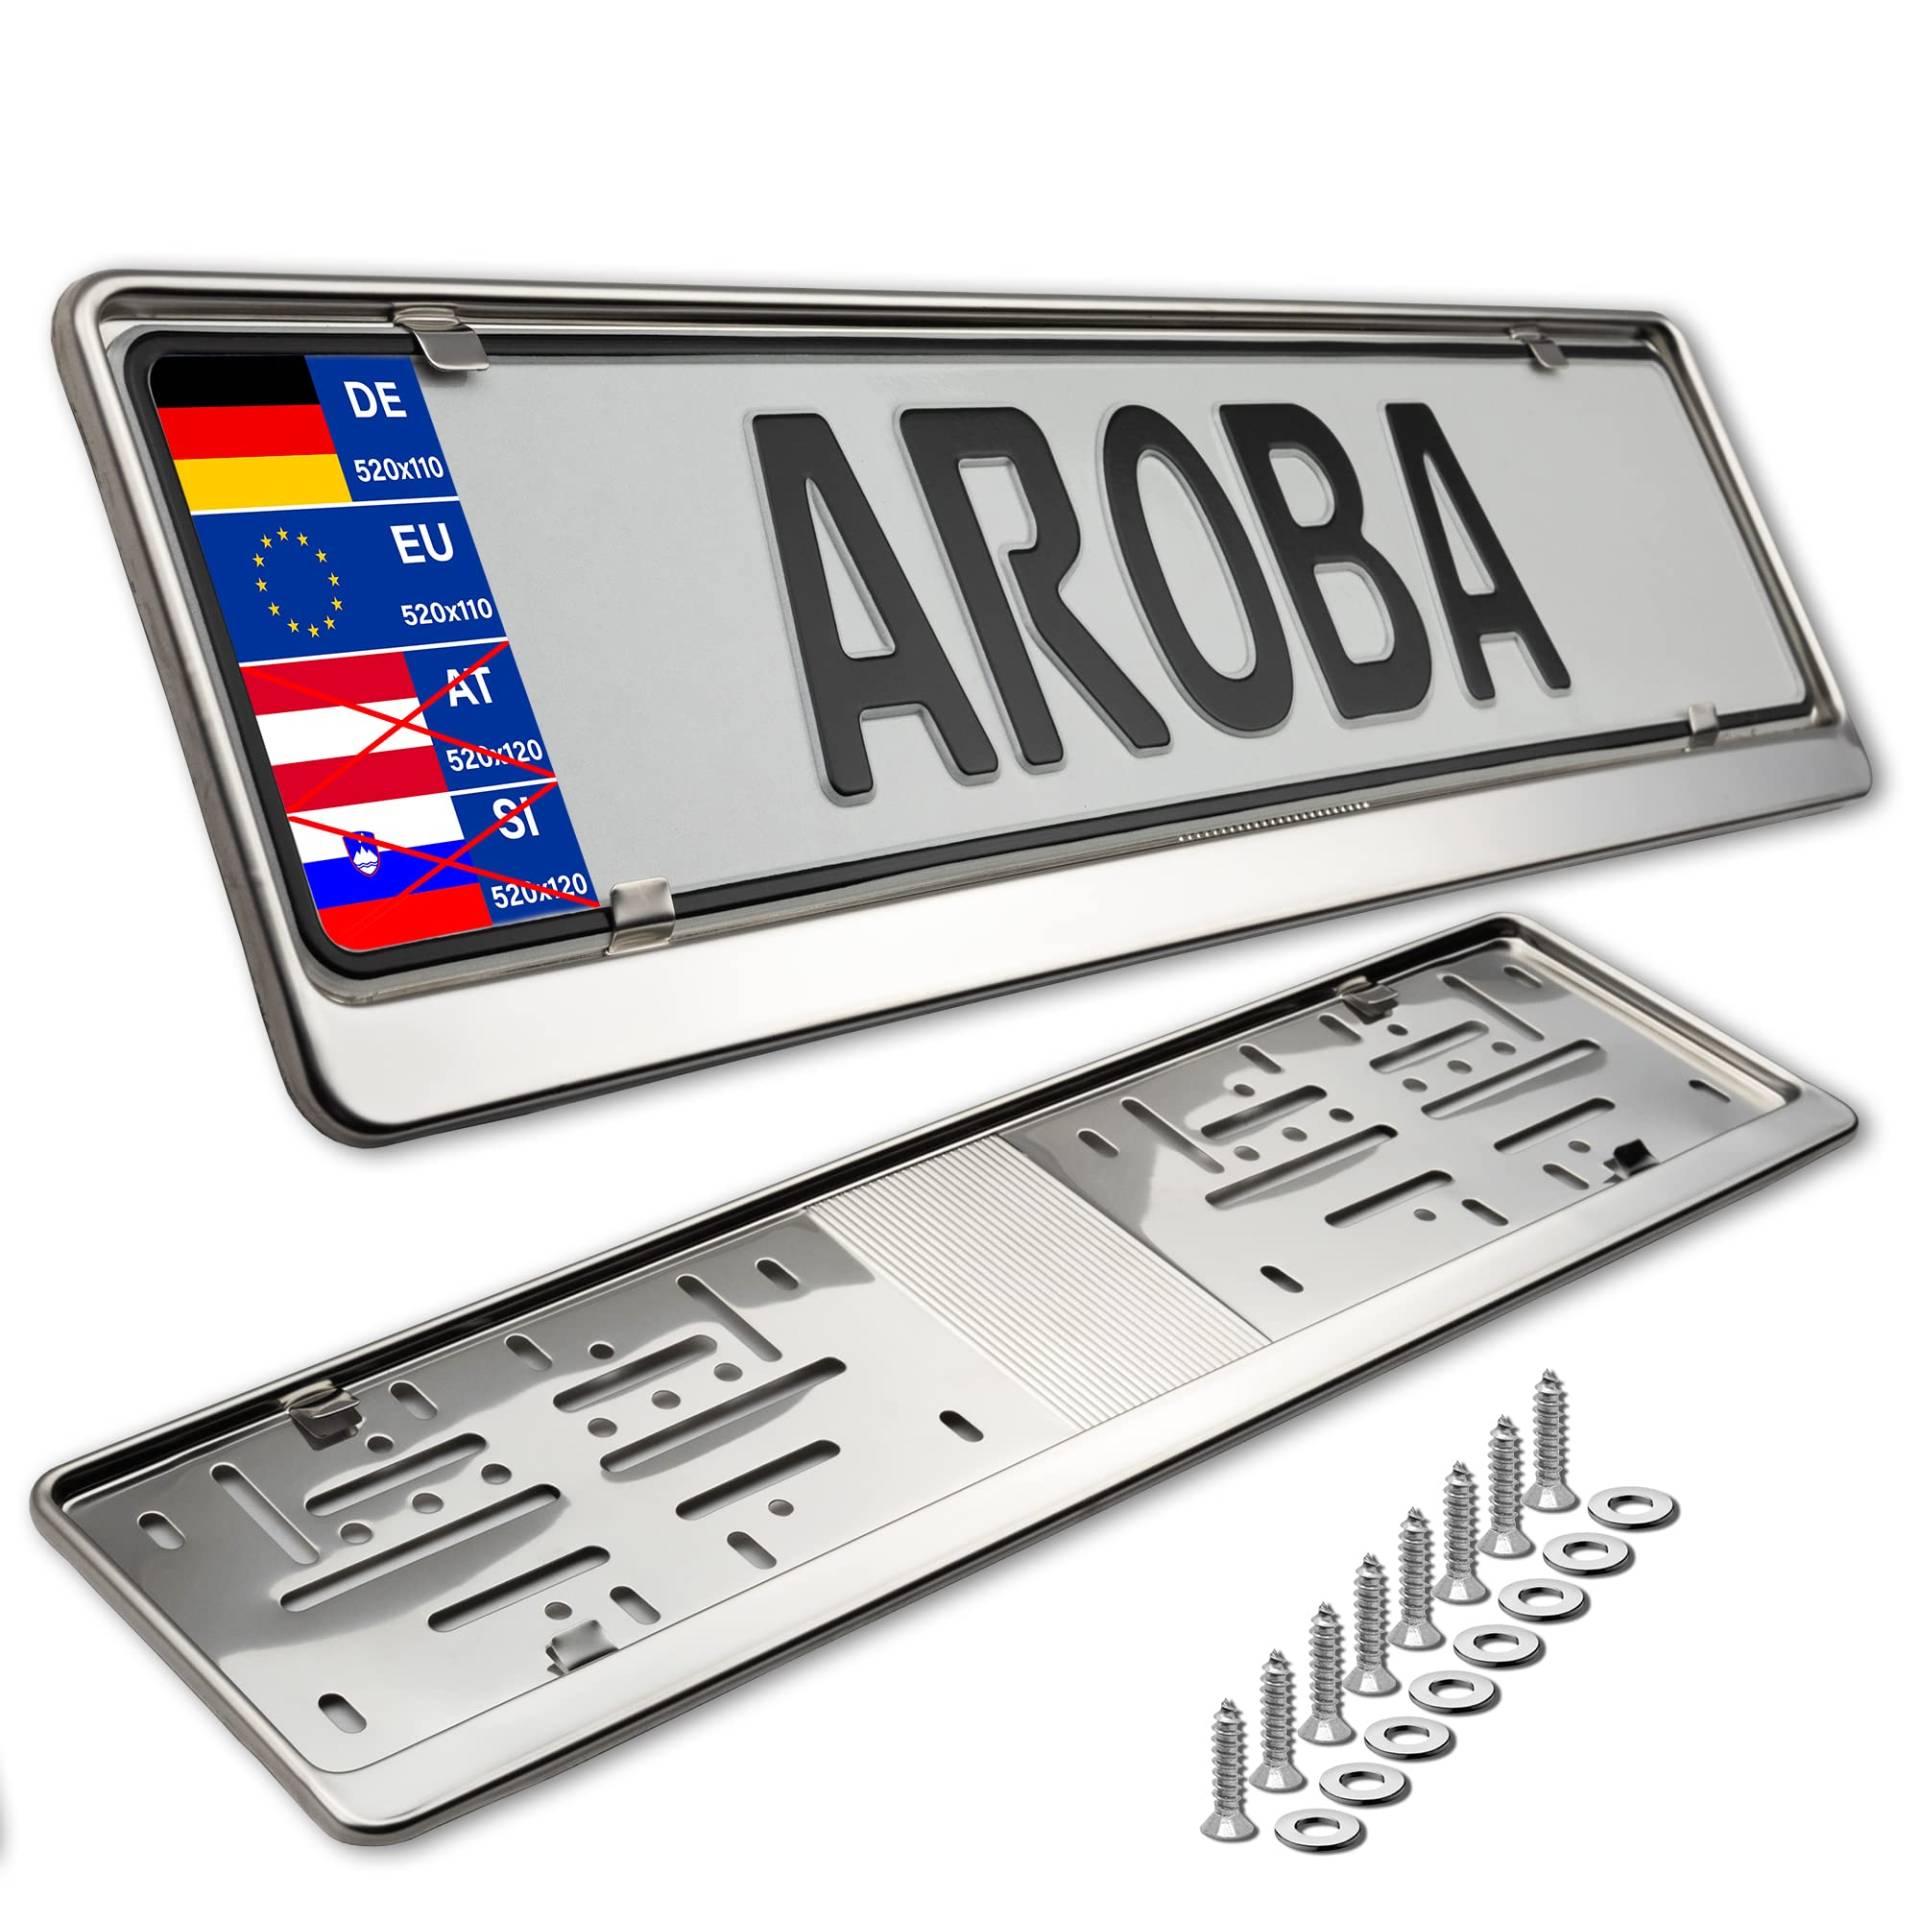 AROBA 2X Premium Auto Kennzeichenhalter 100% Edelstahl POLIERT für DEUTSCHLAND und EU (Kennzeichen der Größe 520mm x 110mm) Nummernschildhalter Kennzeichenhalterung INOX Rostfreier Stahl V2A von AROBA